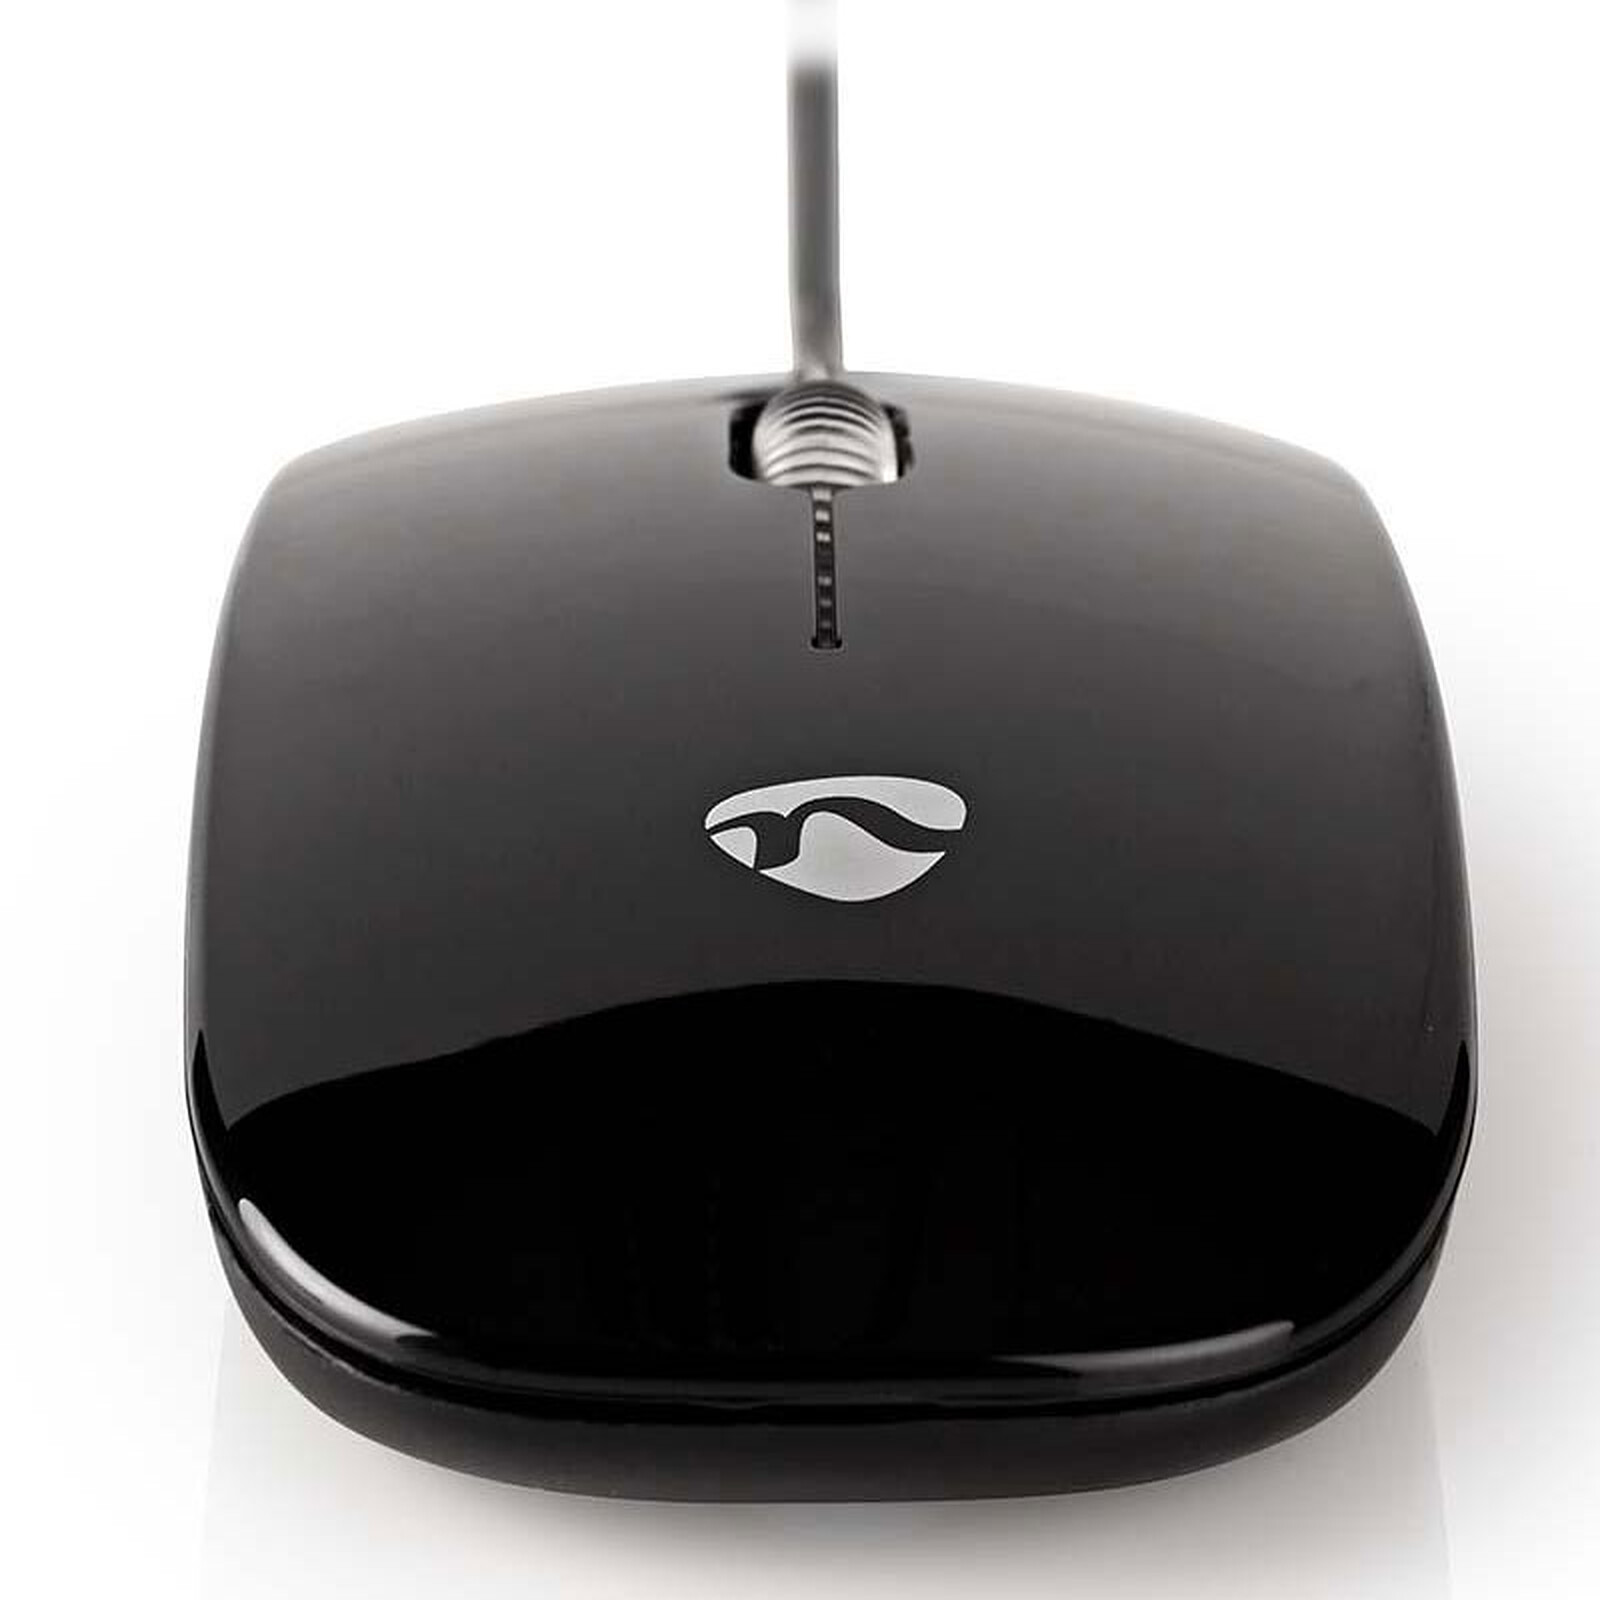 Microsoft Basic Optical Mouse Noir - Souris PC - Garantie 3 ans LDLC